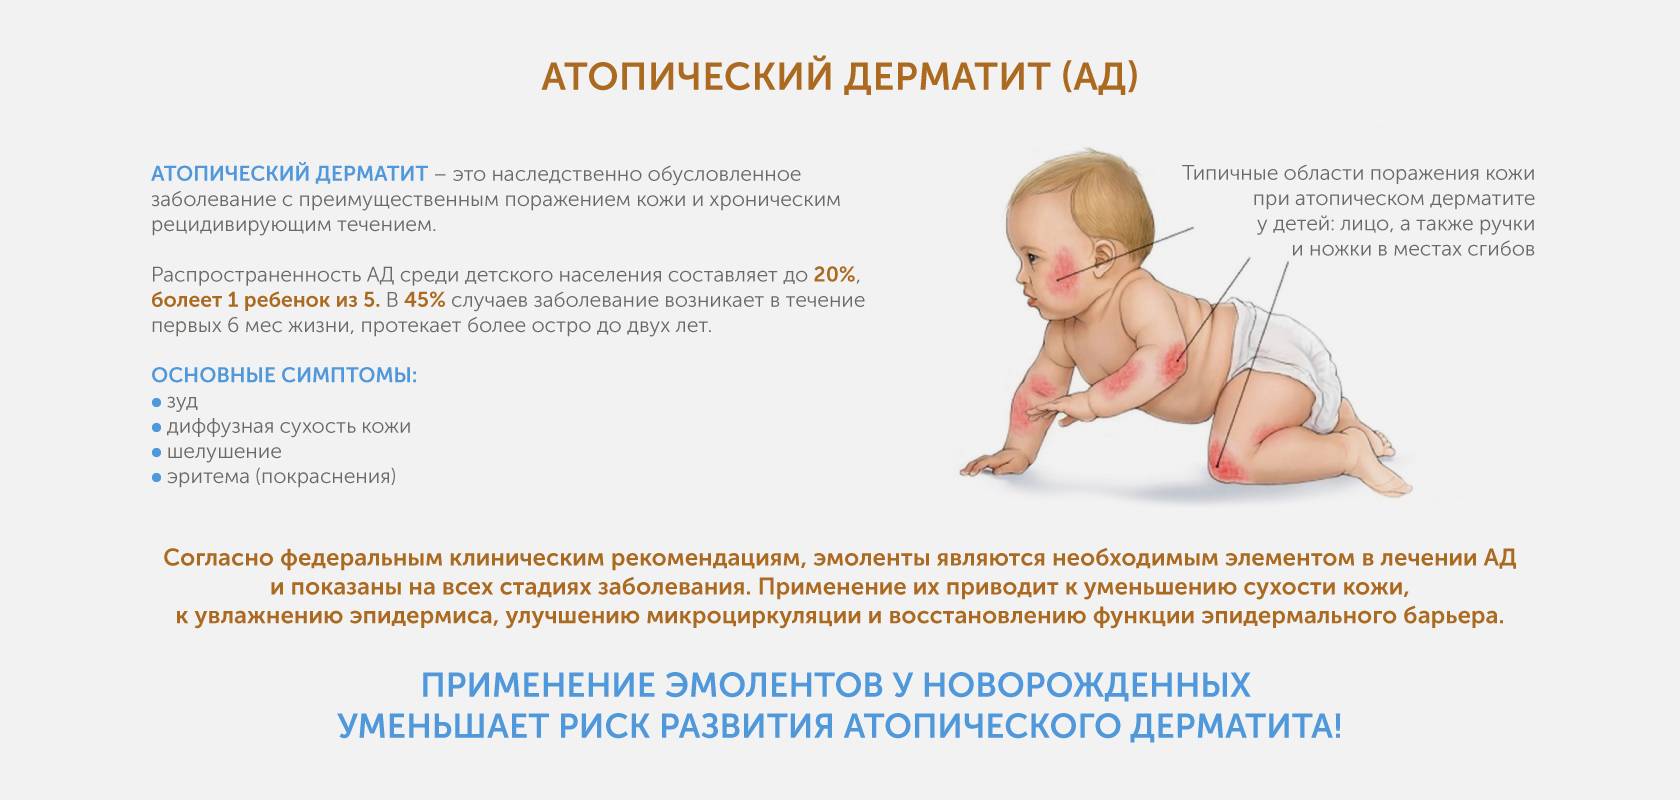 Тонус 6 месяцев. Атопический дерматит причины у детей 4 месяца. Симптомы атопический дерматит у ребёнка 6 месяцев. Атопический дерматит клинические рекомендации 2020. Дерматит у 4 месячного ребенка.